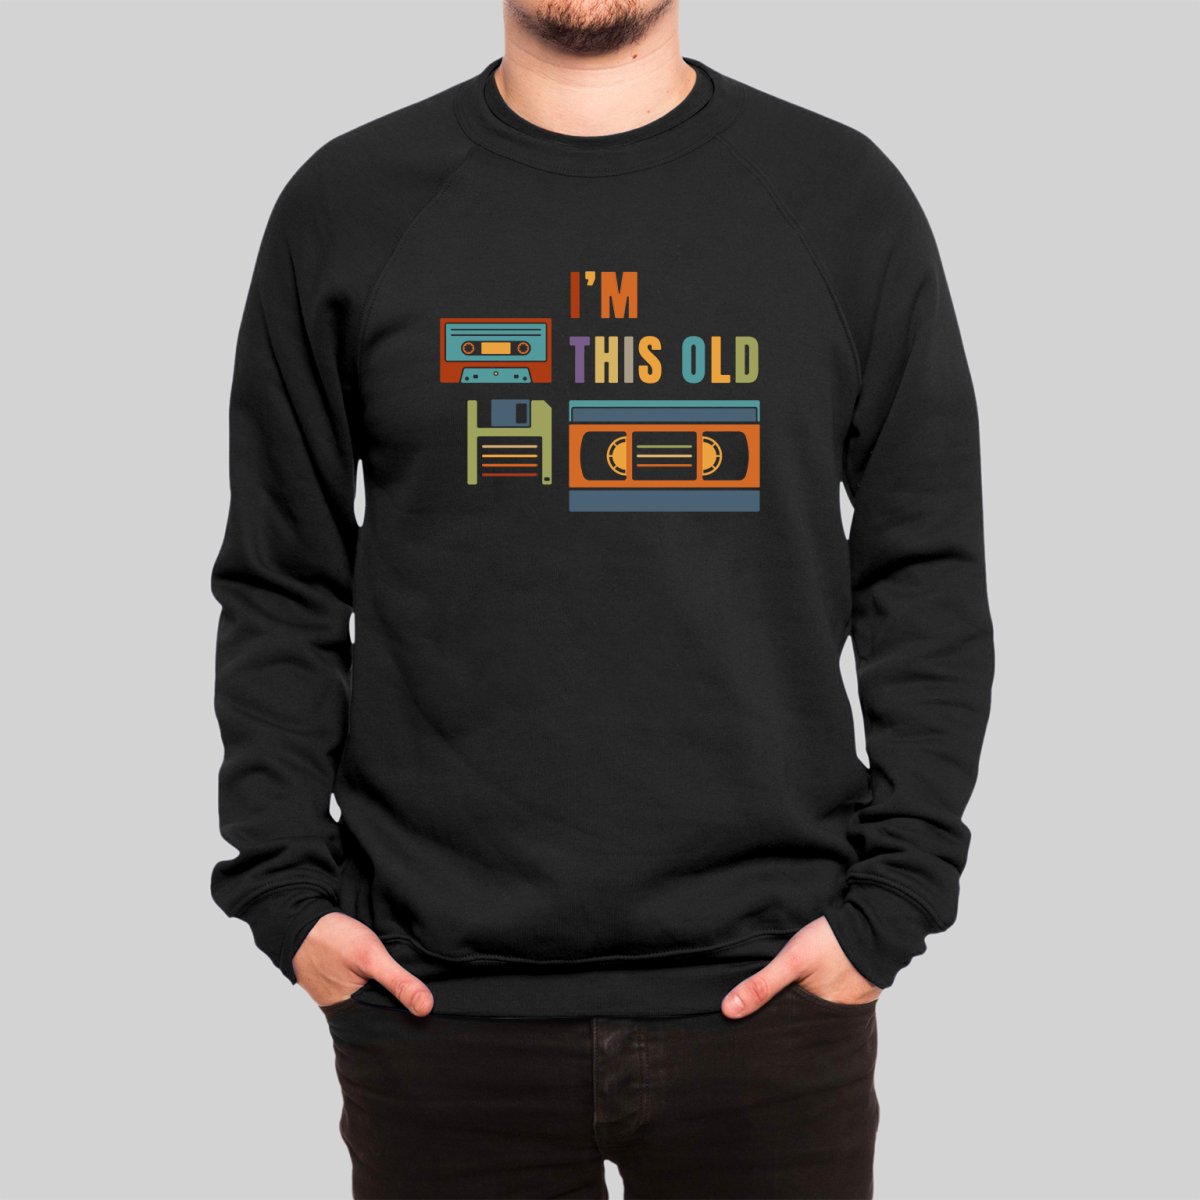 Im This Old Sweatshirt - Geeksoutfit